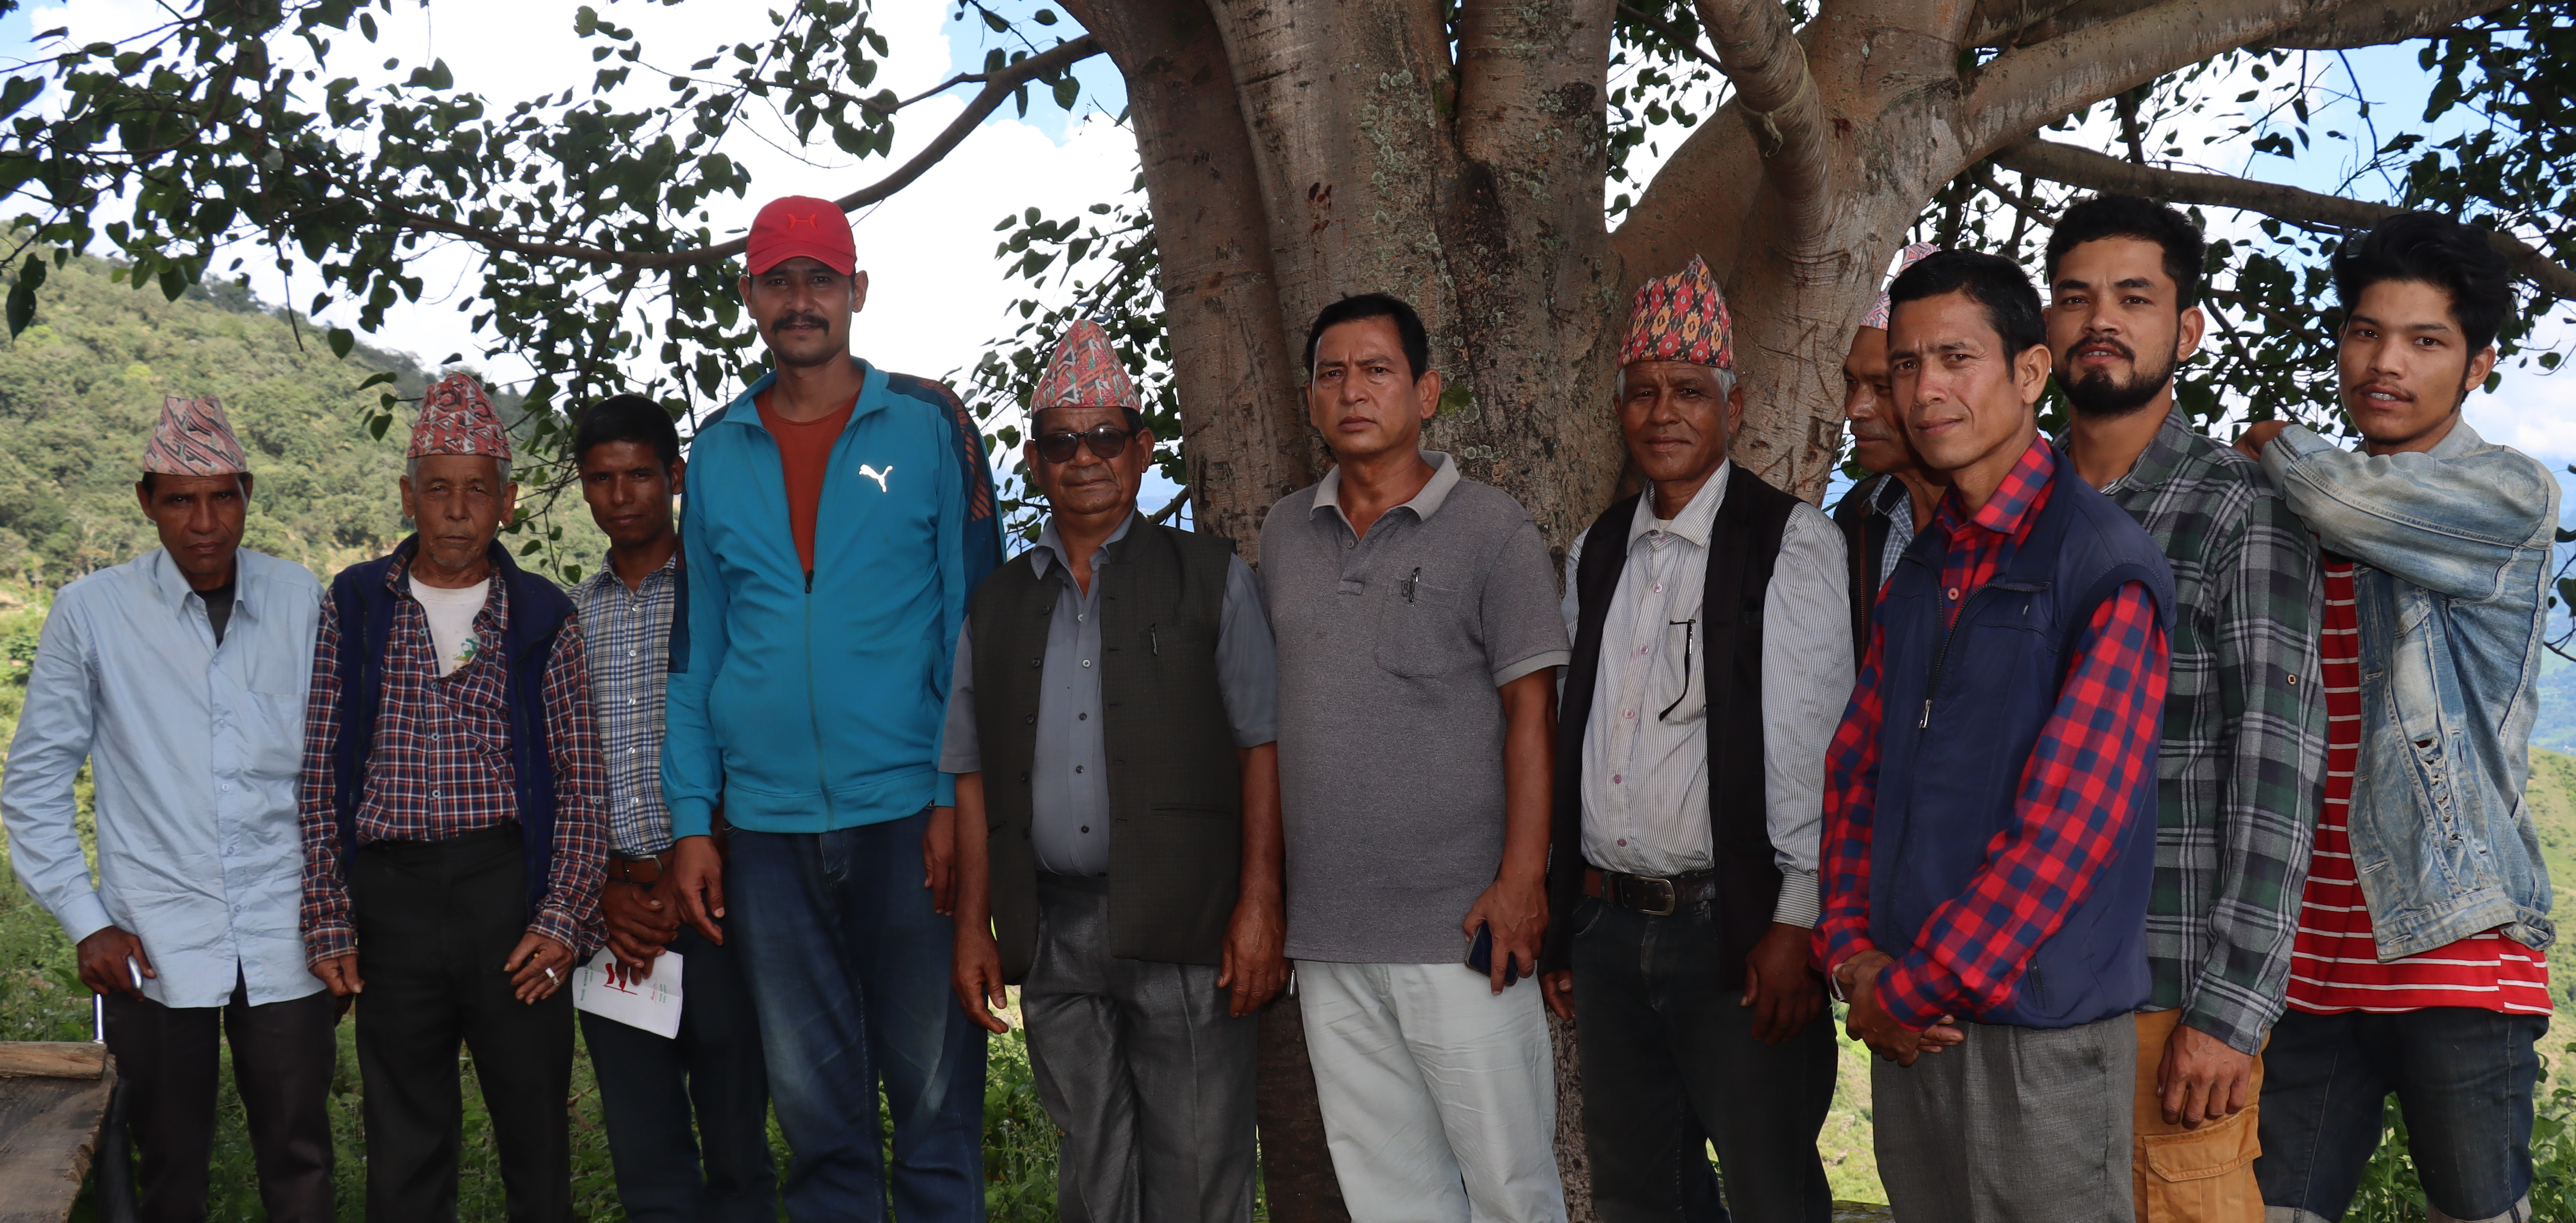 नेपाली काङ्ग्रेस बुढाकोटको अधिवेशन लक्षित कार्यक्रम सम्पन्न